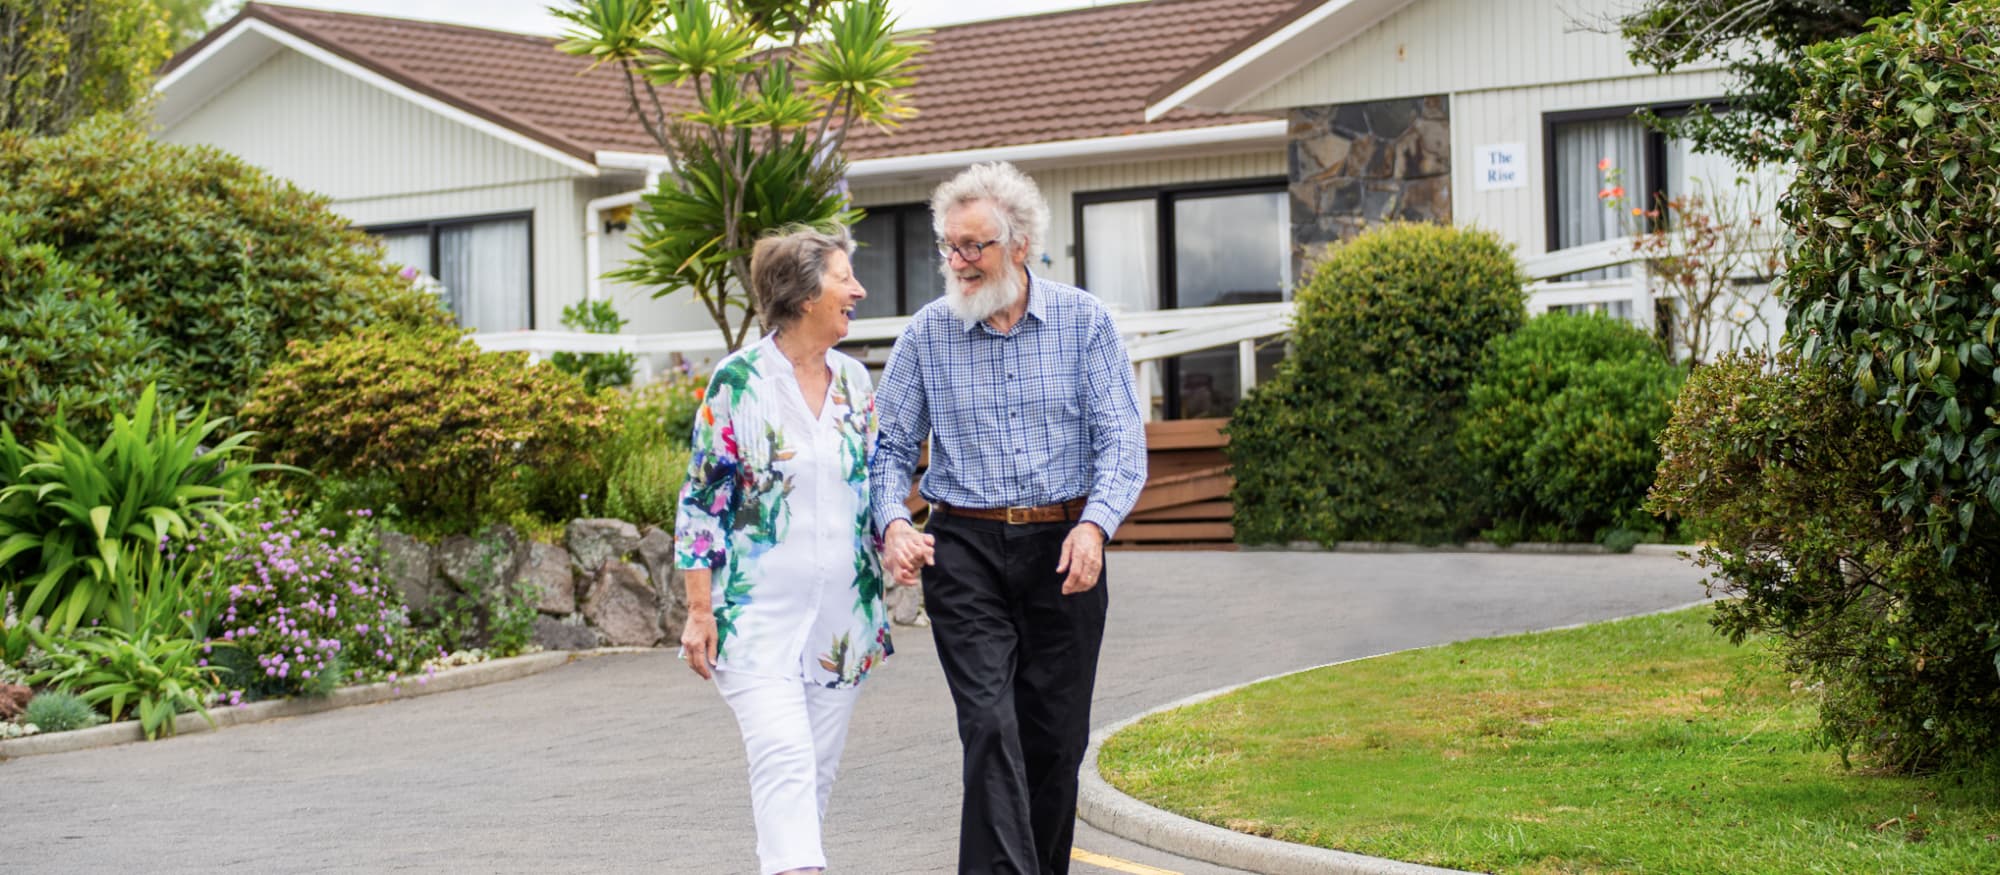 Retirement Villages New Zealand